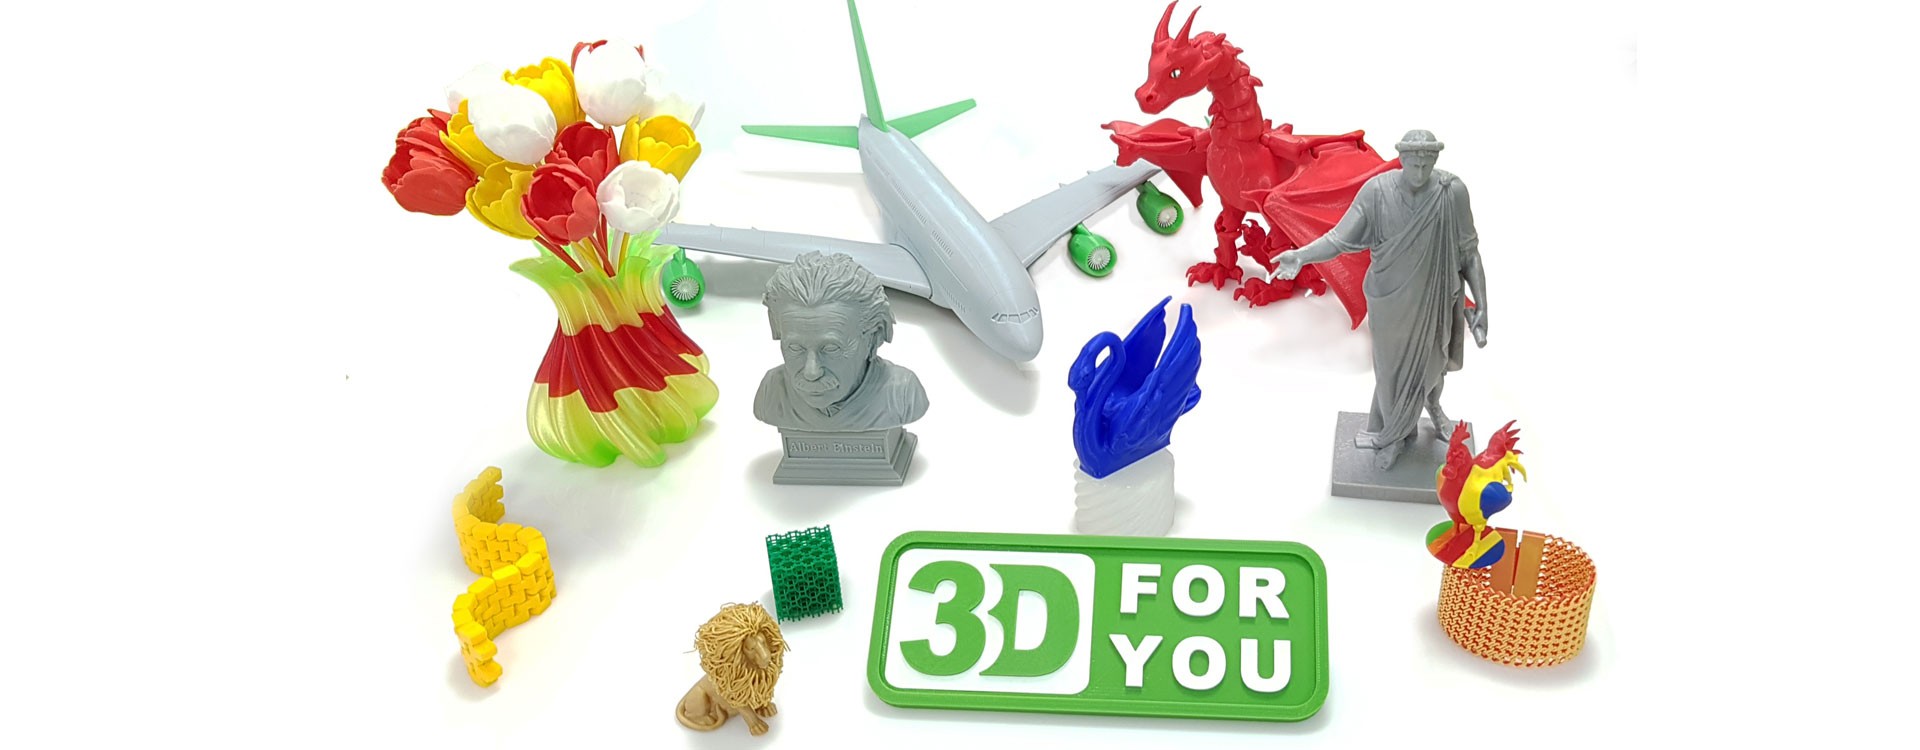 Що можна виготовити за допомогою 3D-принтера?